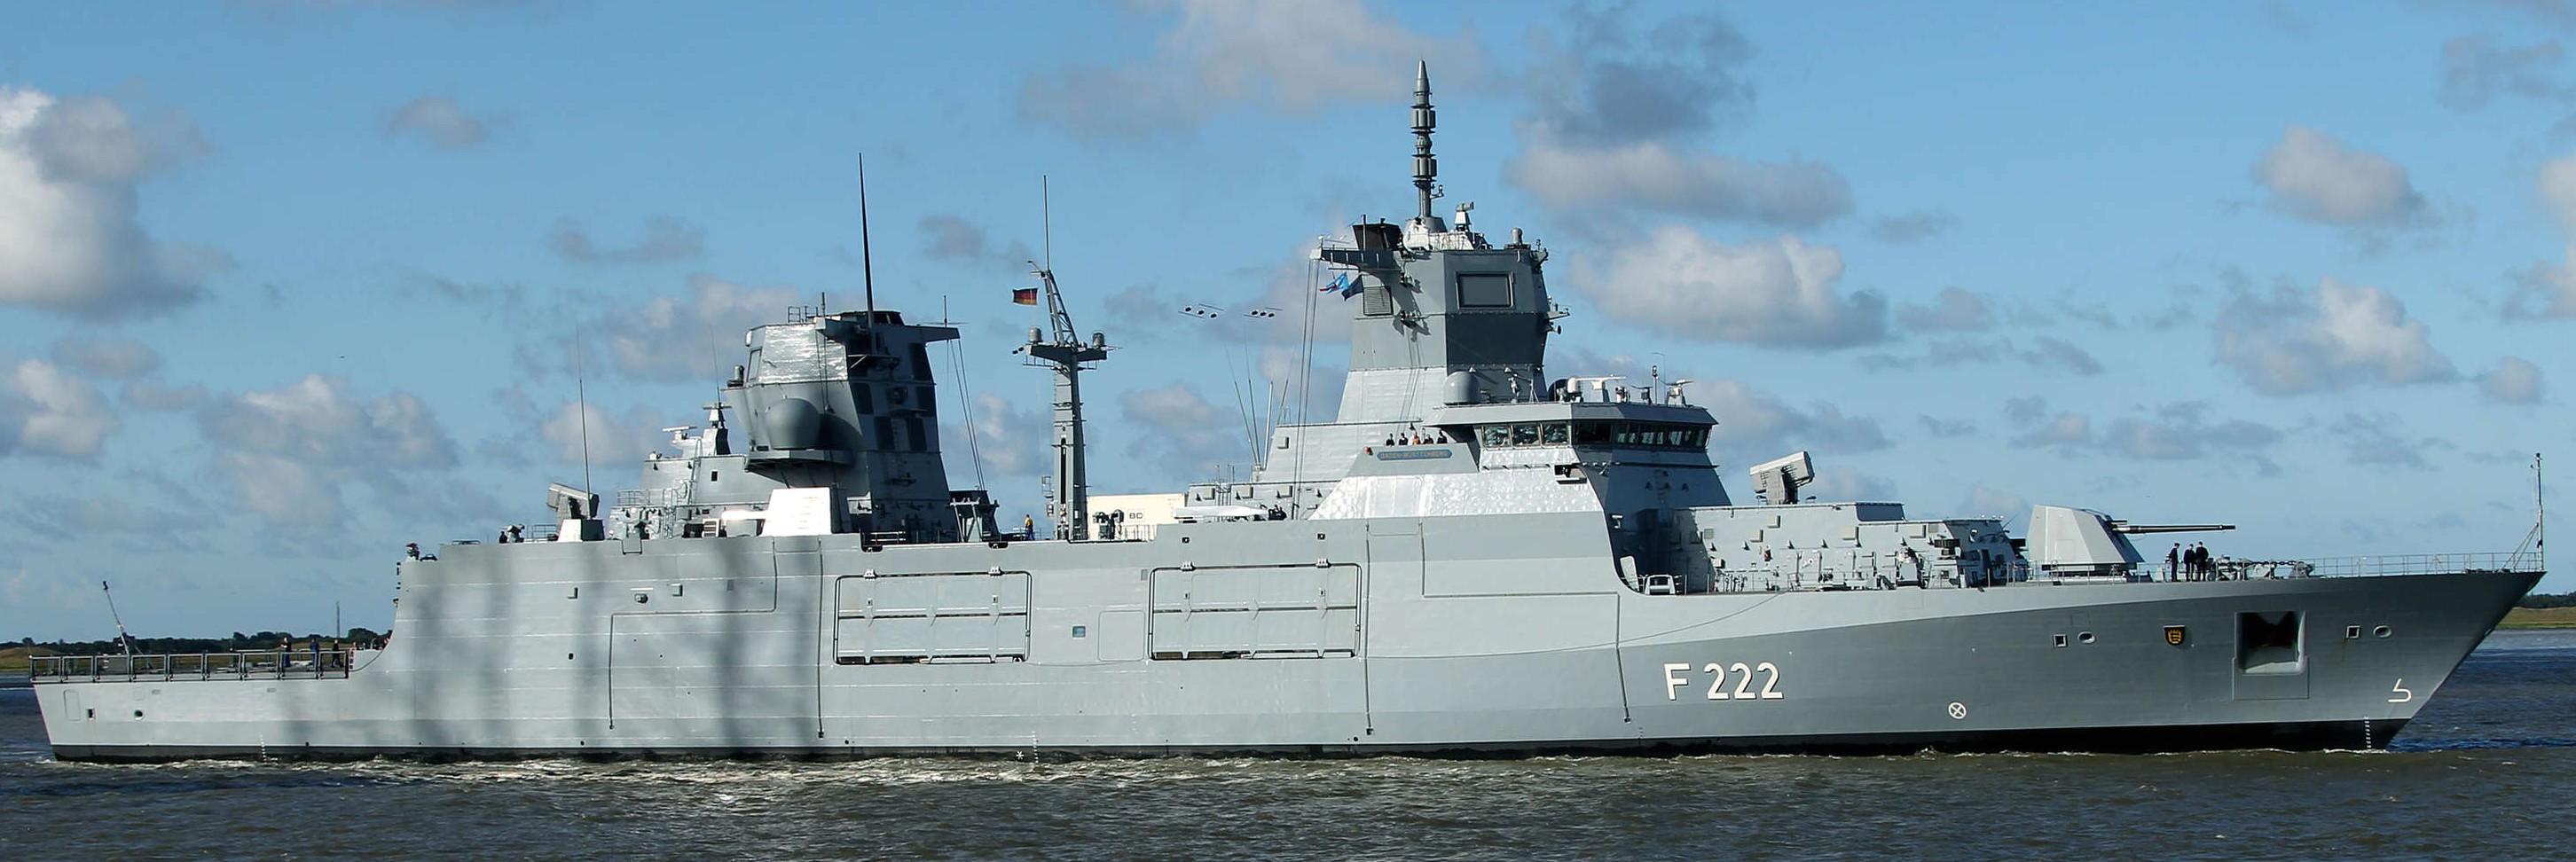 f-222 fgs baden-wurttemberg type 125 class frigate german navy 18